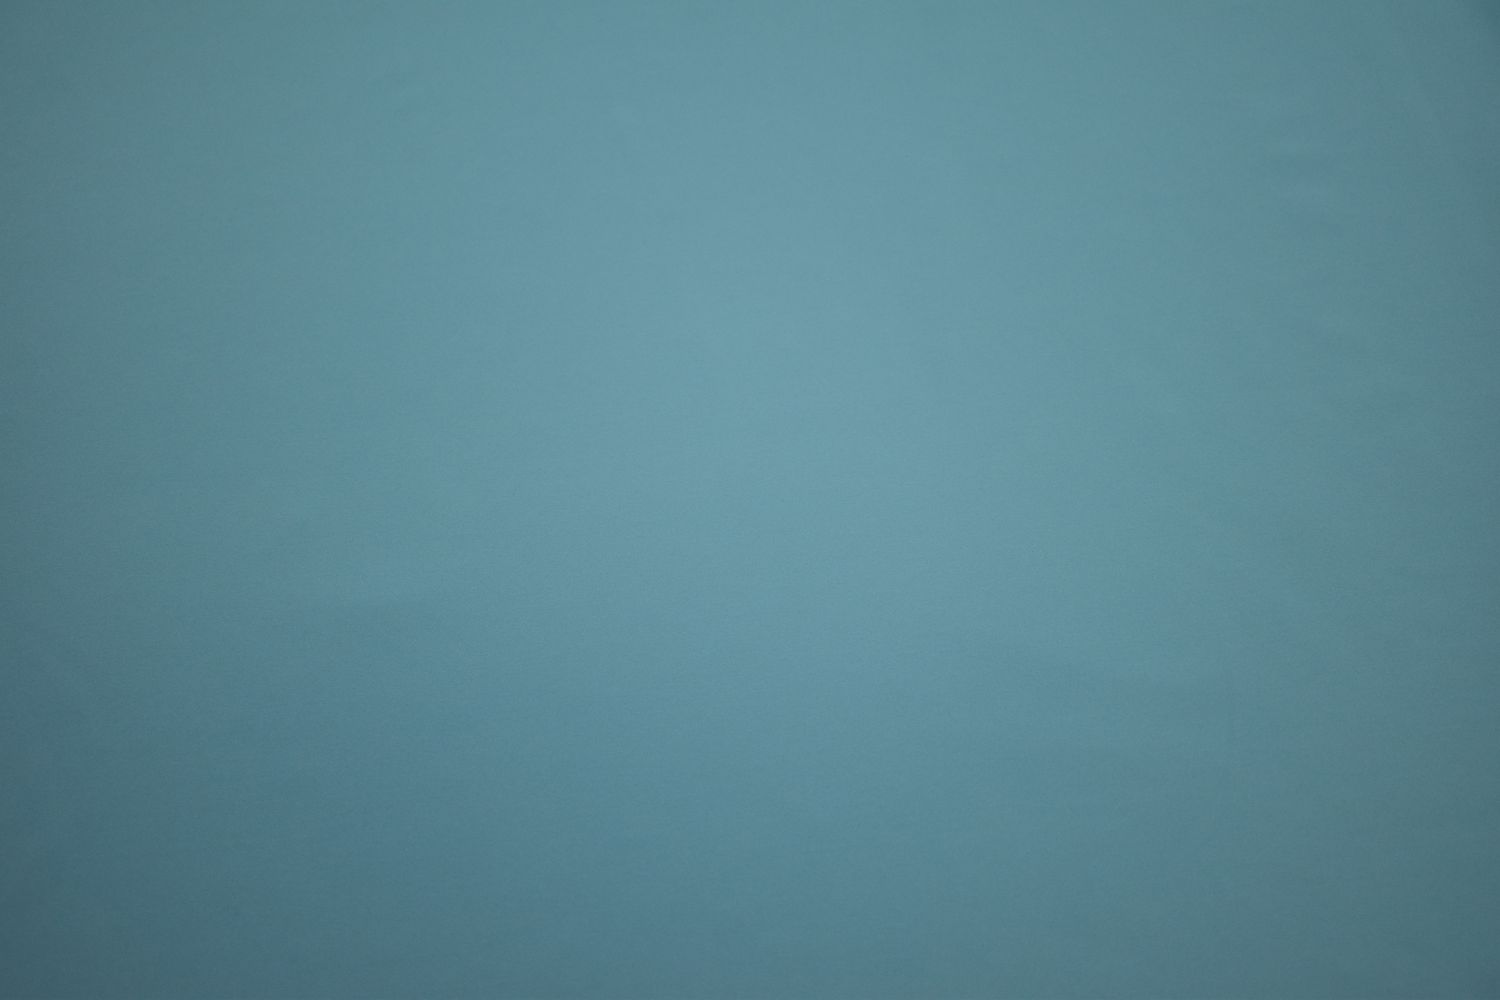 Бифлекс голубого цвета W-126557